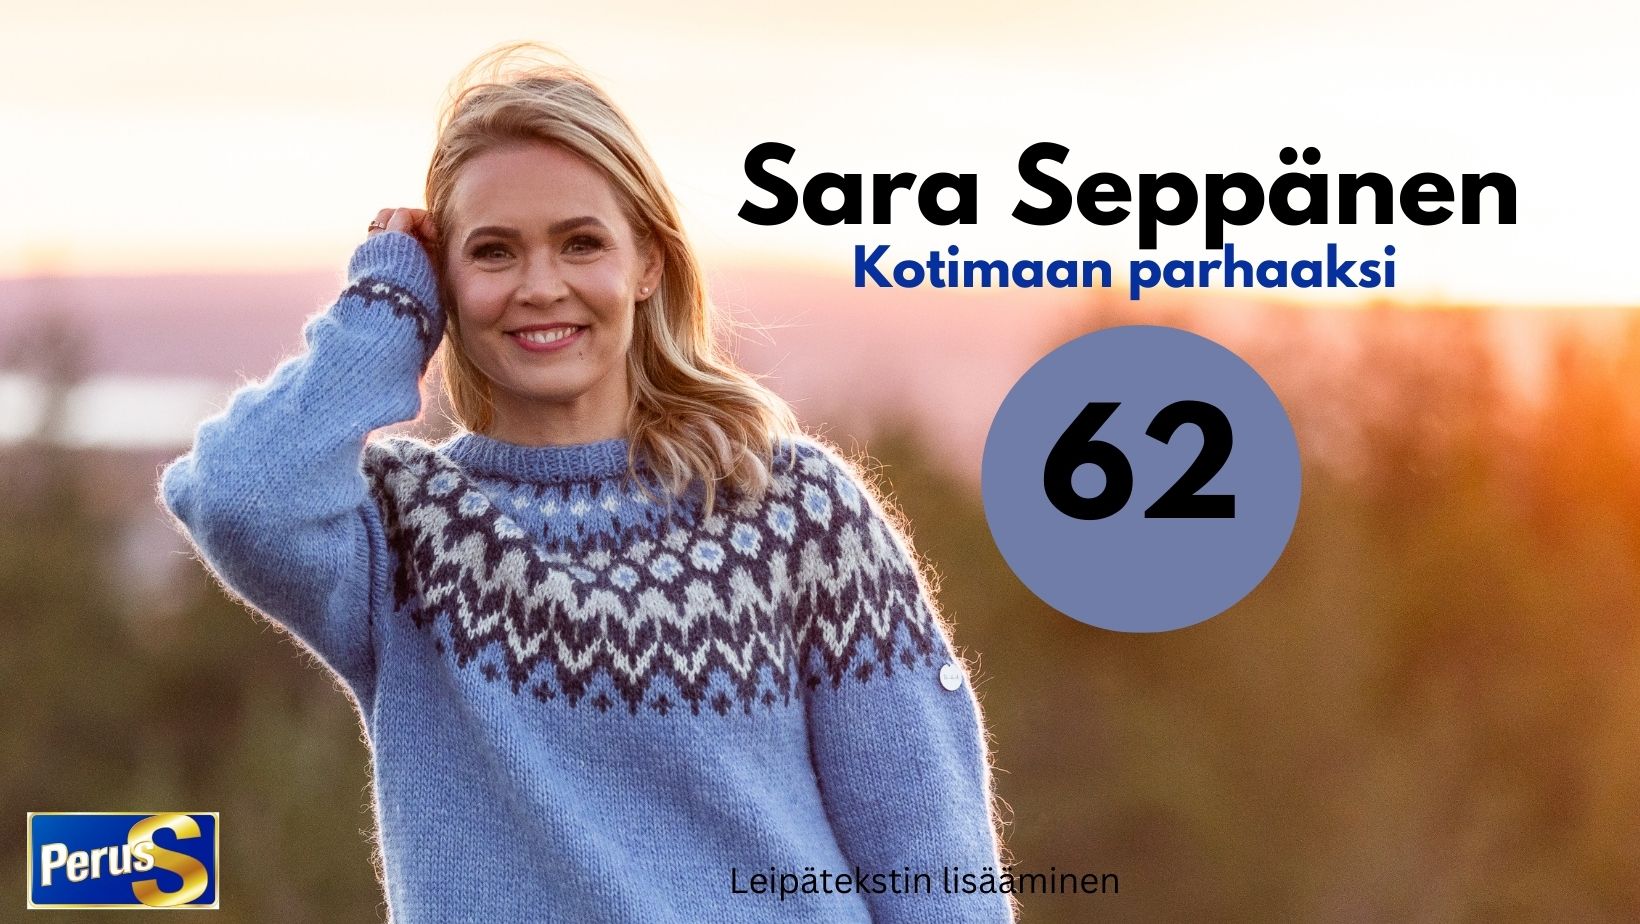 Sara Seppänen